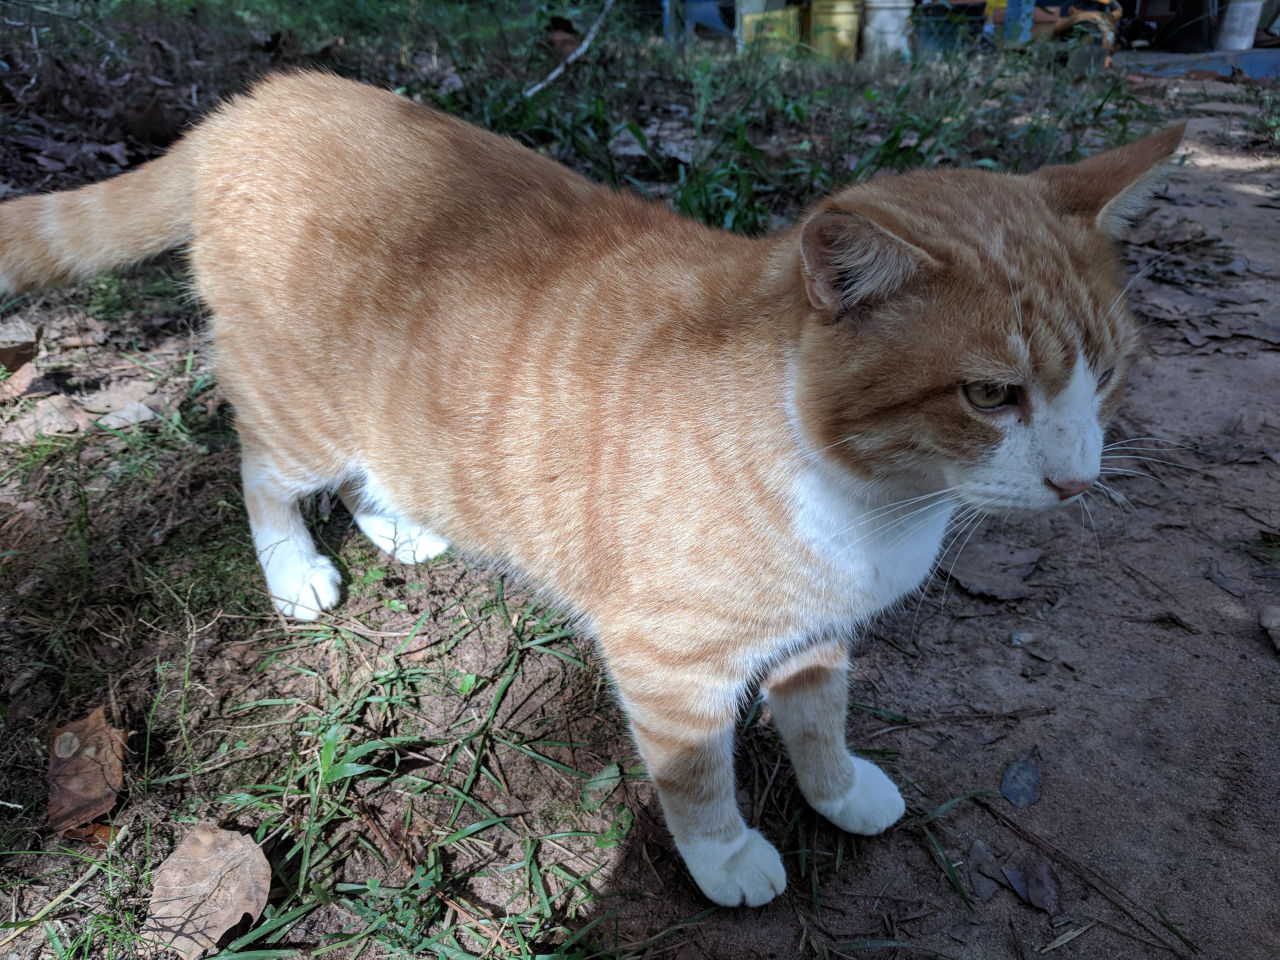 Tigger, an orange and white cat, walking.